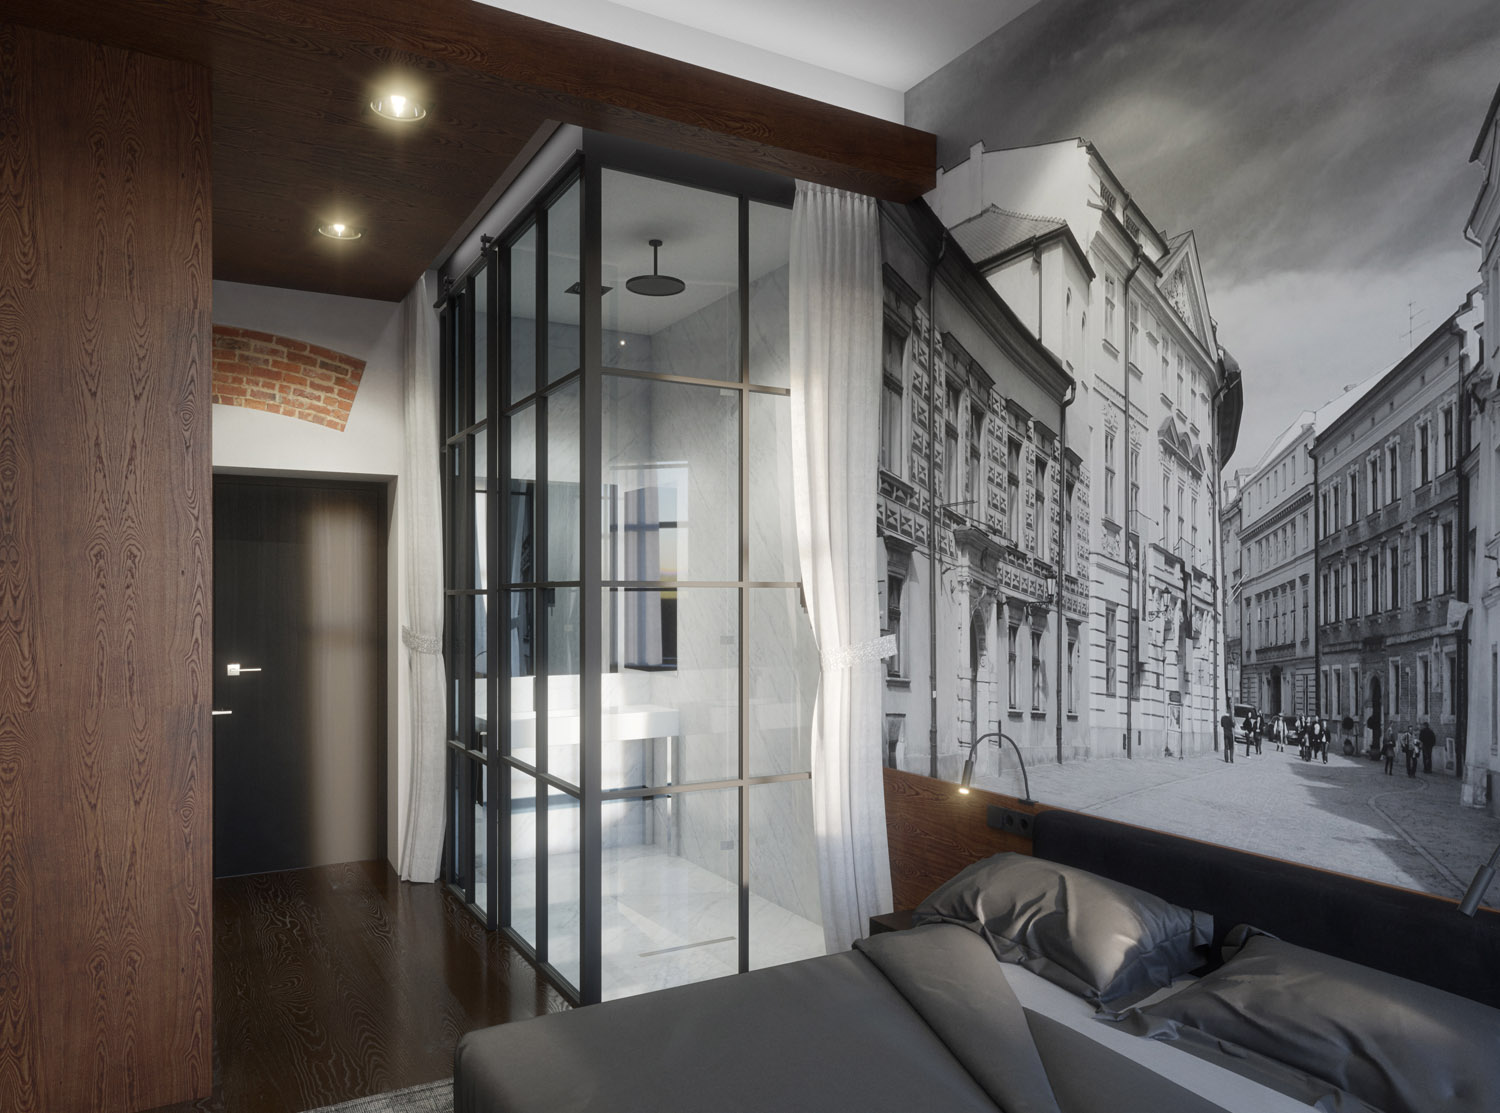 Wizualizacja 3D - wnętrze pokoju hotelowego